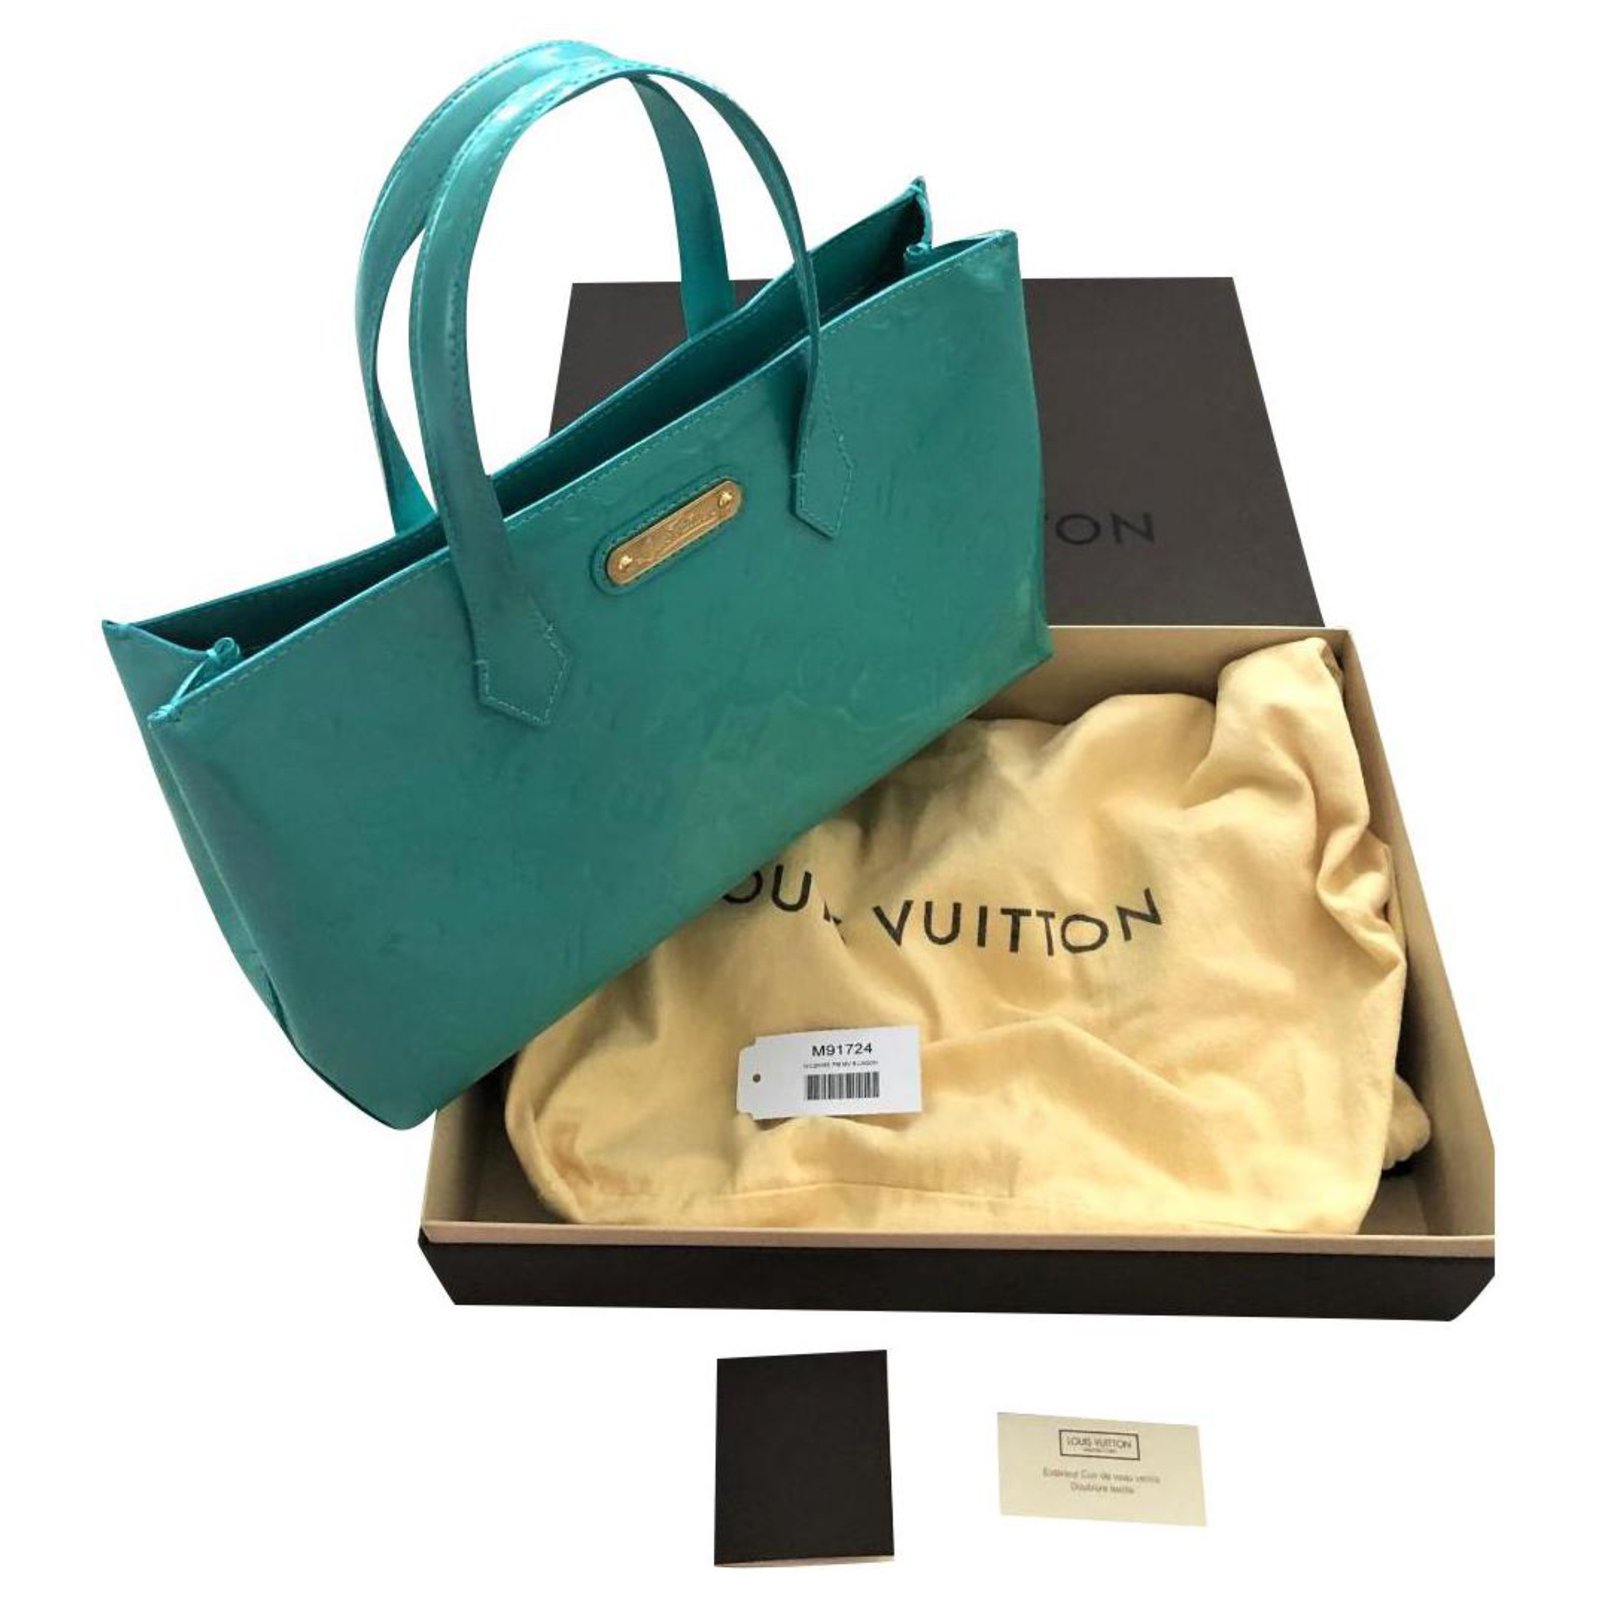 Louis Vuitton Monogram Vernis Wilshire Patent Leather mm Bag